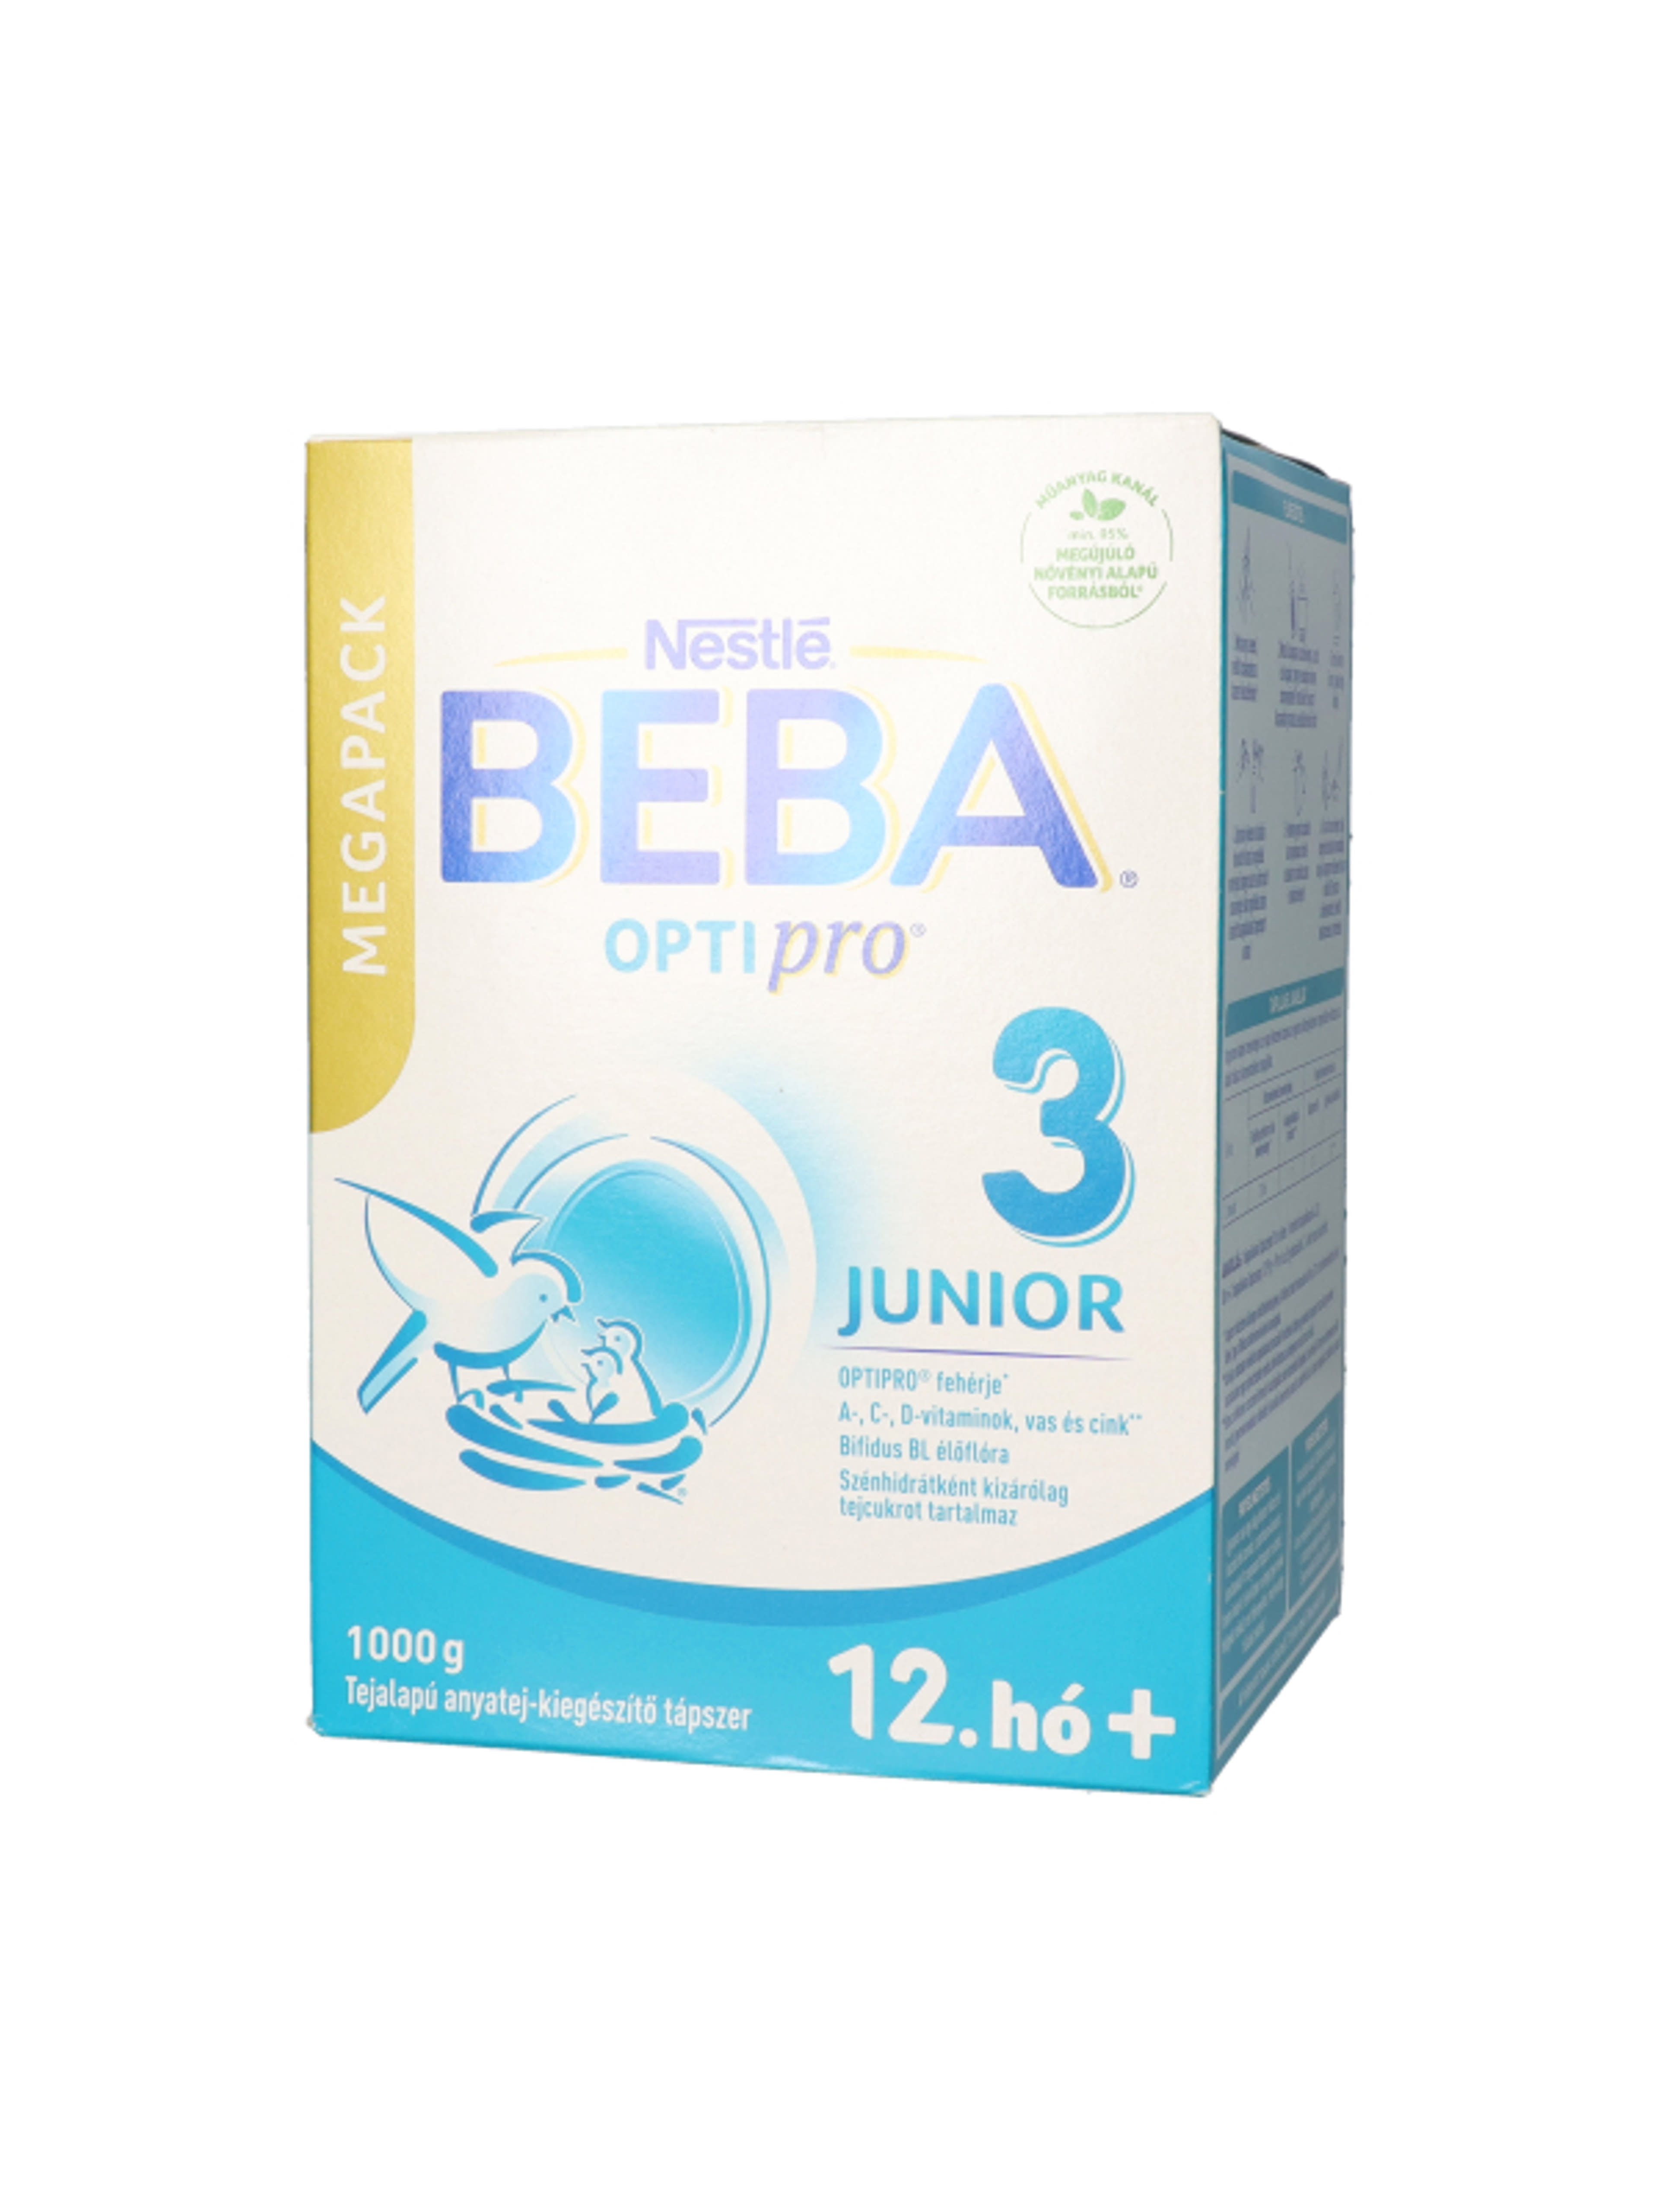 Beba Optipro 3 Junior tejalapú anyatej-kiegészítő tápszer 12. hónapos kortól - 1000 g-4